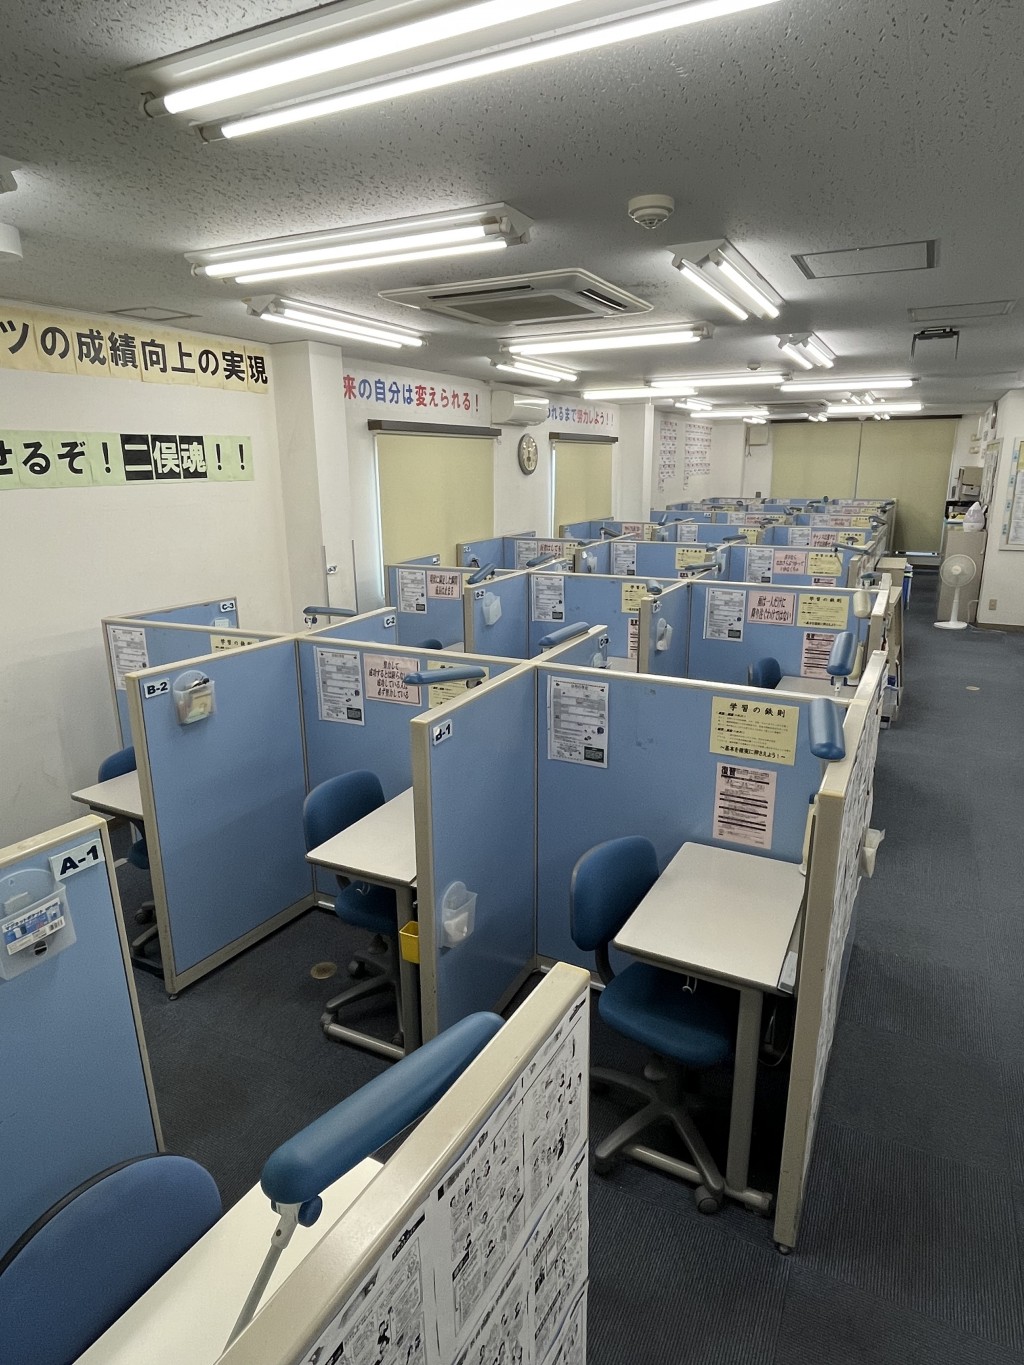 二俣川校の教室写真